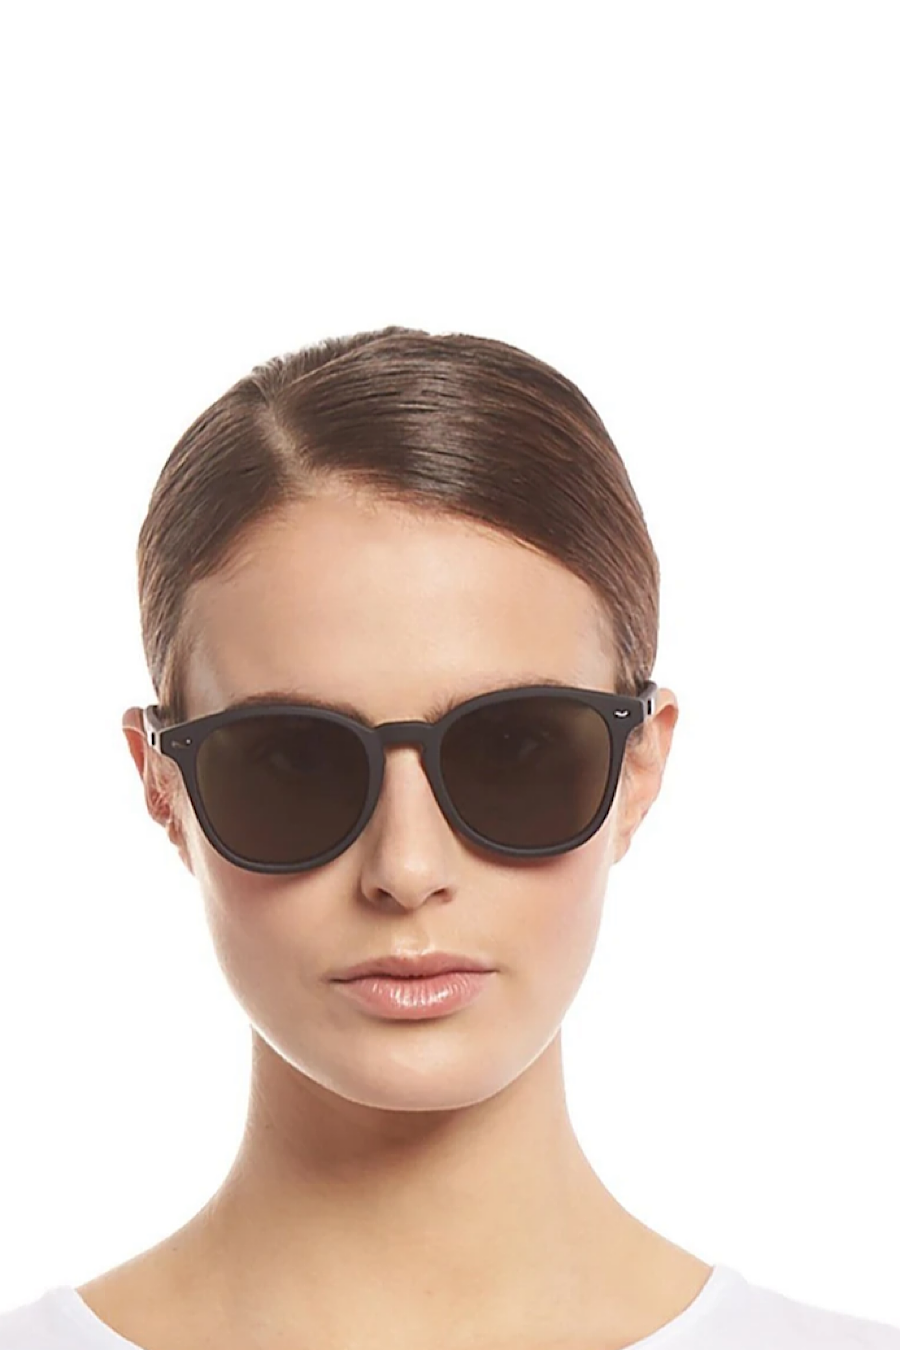 Le Specs Bandwagon Sunglasses in Black Rubber